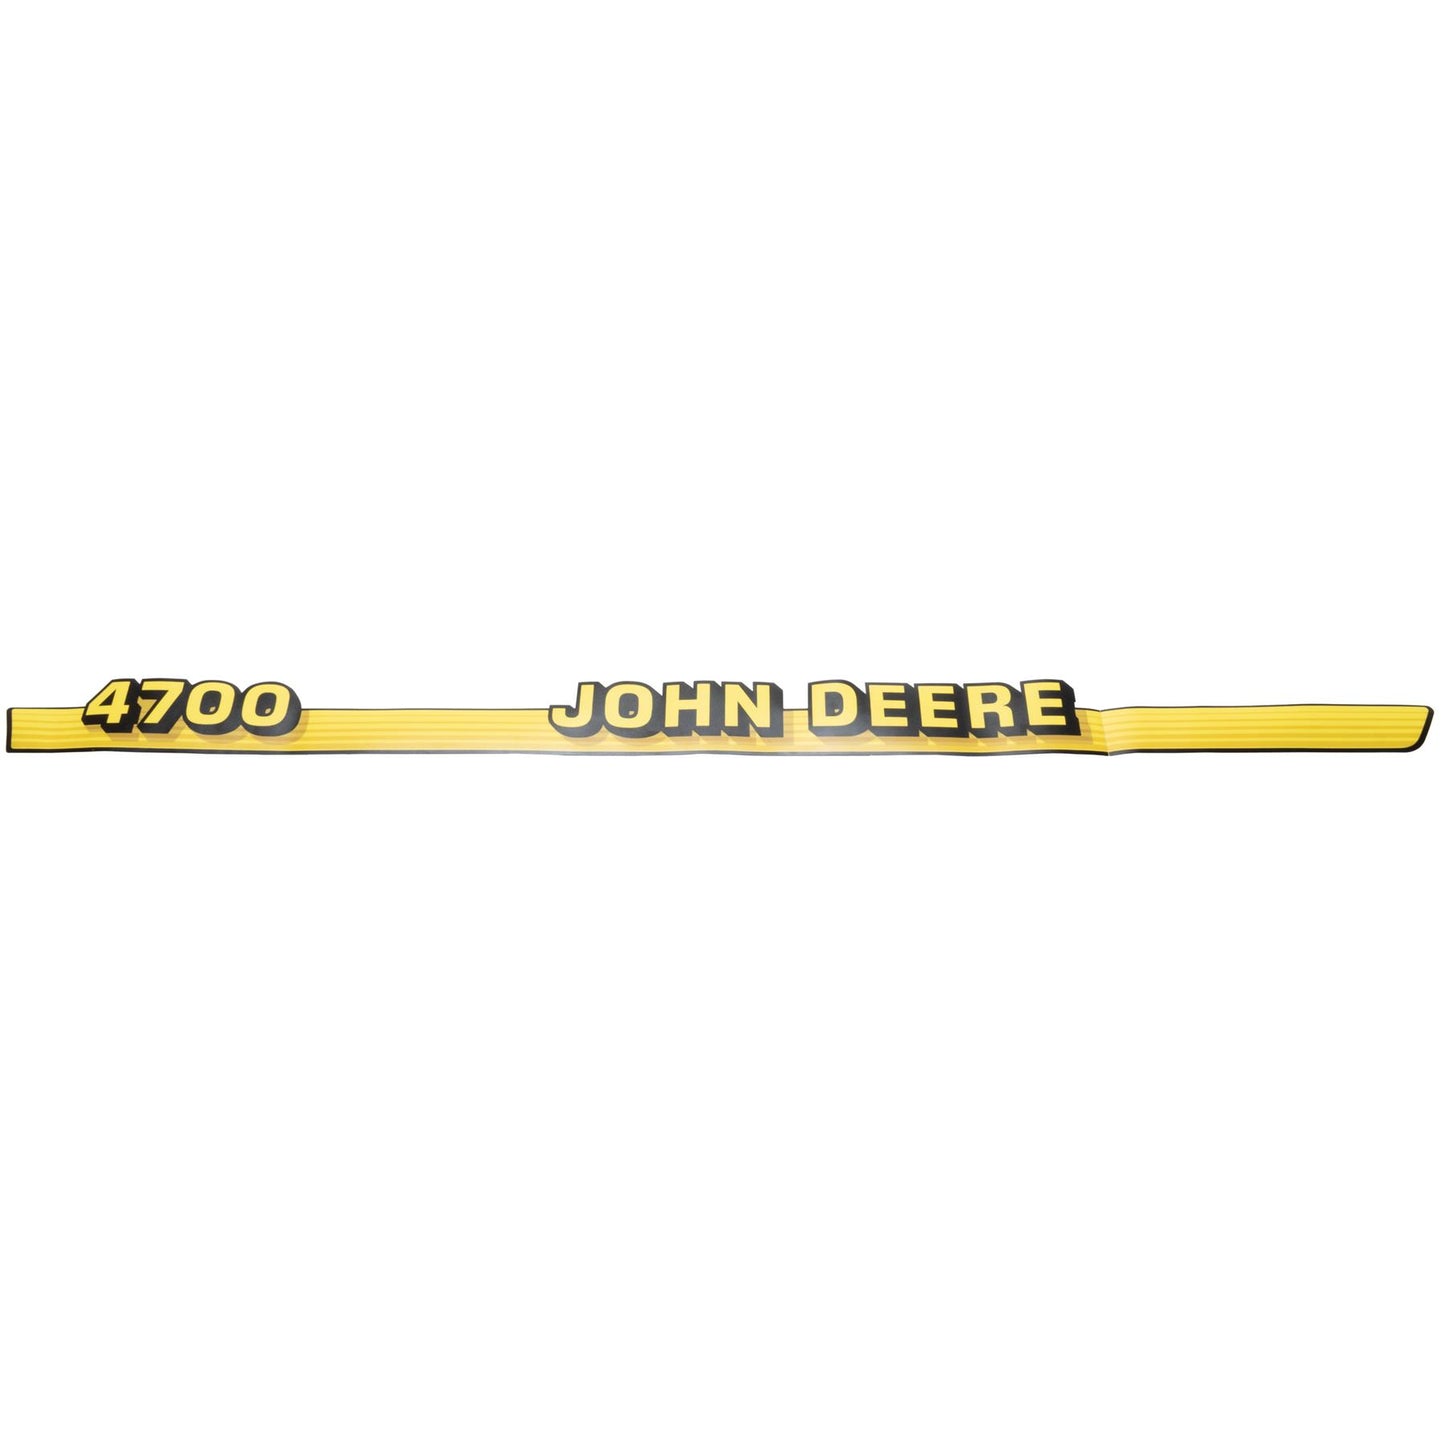 John Deere Decal - 4700 - Both Sides - LVU10328 LVU10342